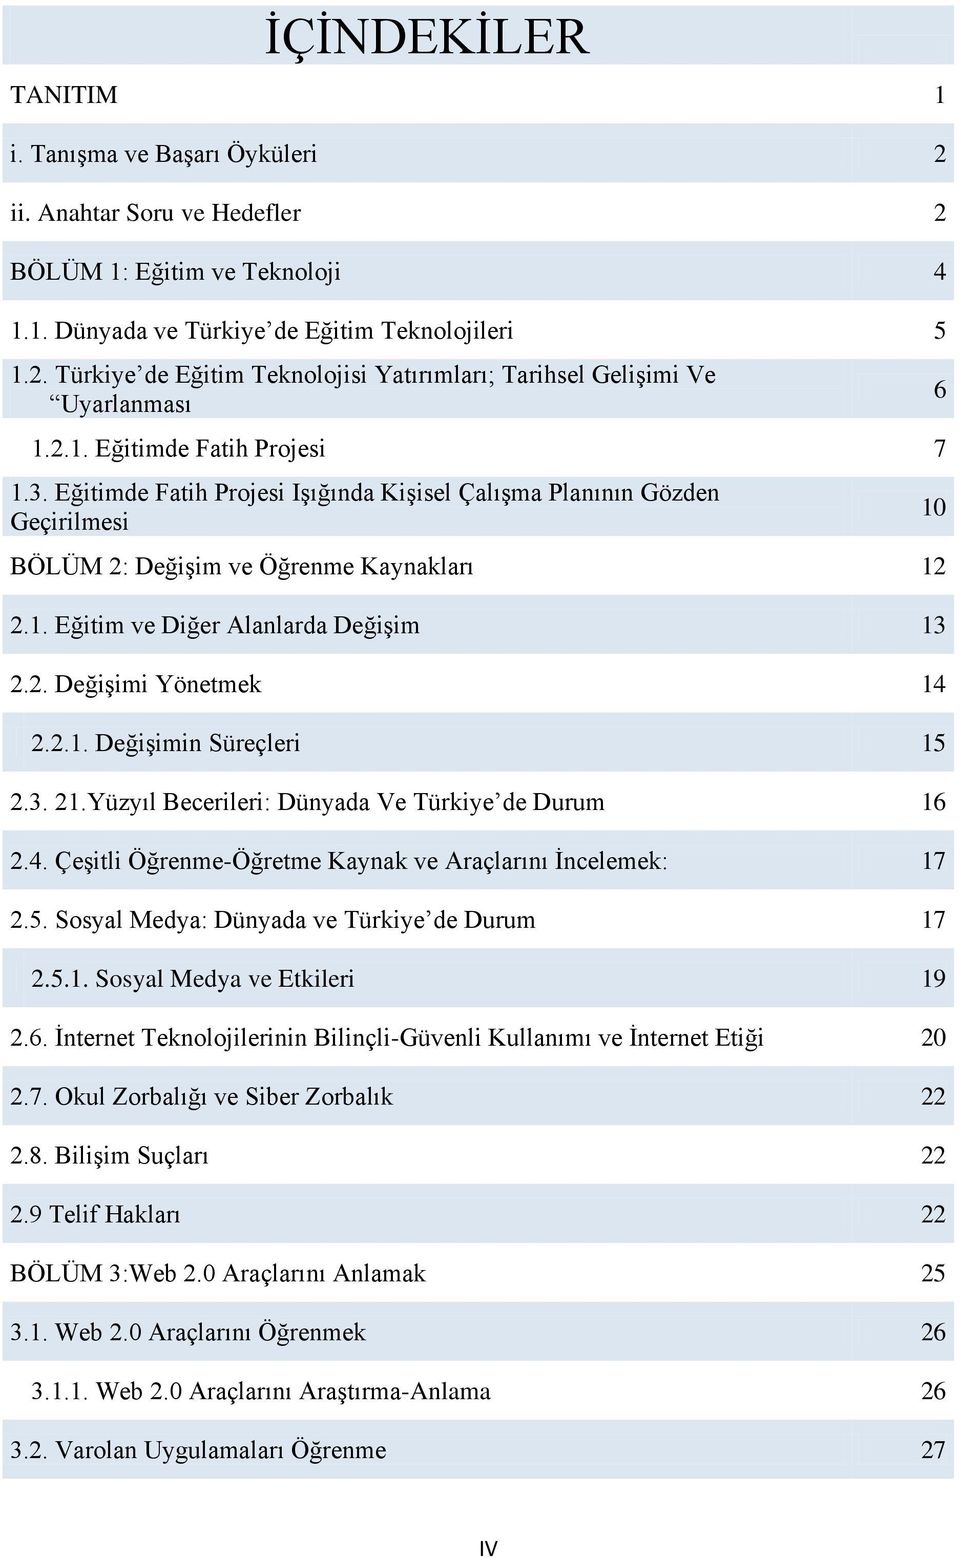 2.1. Değişimin Süreçleri 15 2.3. 21.Yüzyıl Becerileri: Dünyada Ve Türkiye de Durum 16 2.4. Çeşitli Öğrenme-Öğretme Kaynak ve Araçlarını İncelemek: 17 2.5. Sosyal Medya: Dünyada ve Türkiye de Durum 17 2.